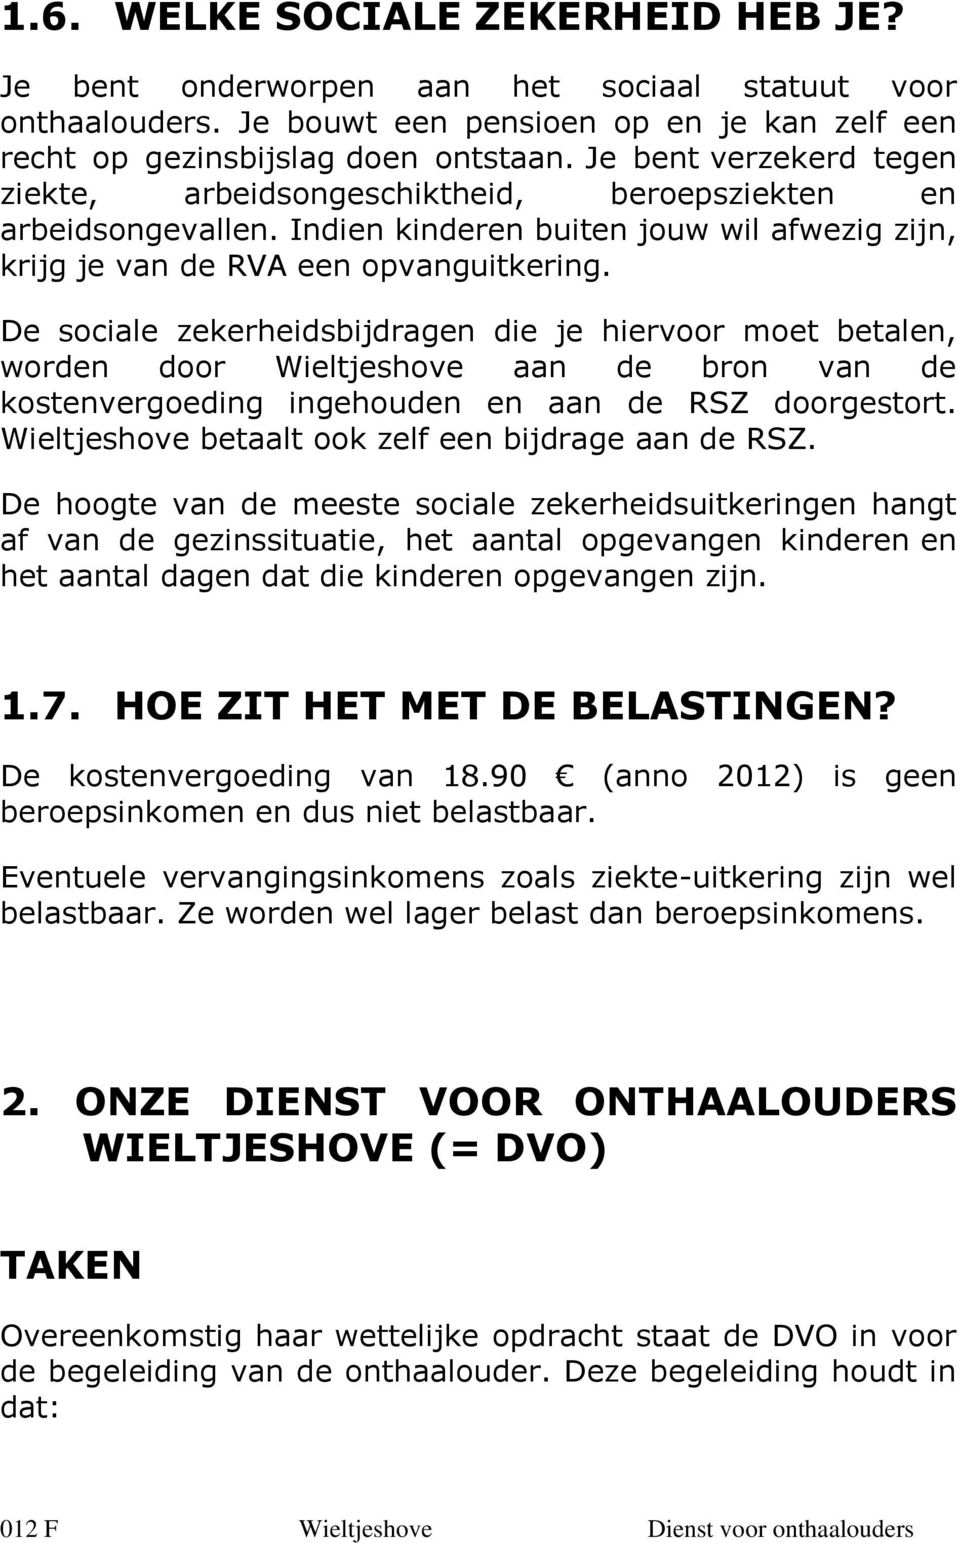 De sociale zekerheidsbijdragen die je hiervoor moet betalen, worden door Wieltjeshove aan de bron van de kostenvergoeding ingehouden en aan de RSZ doorgestort.